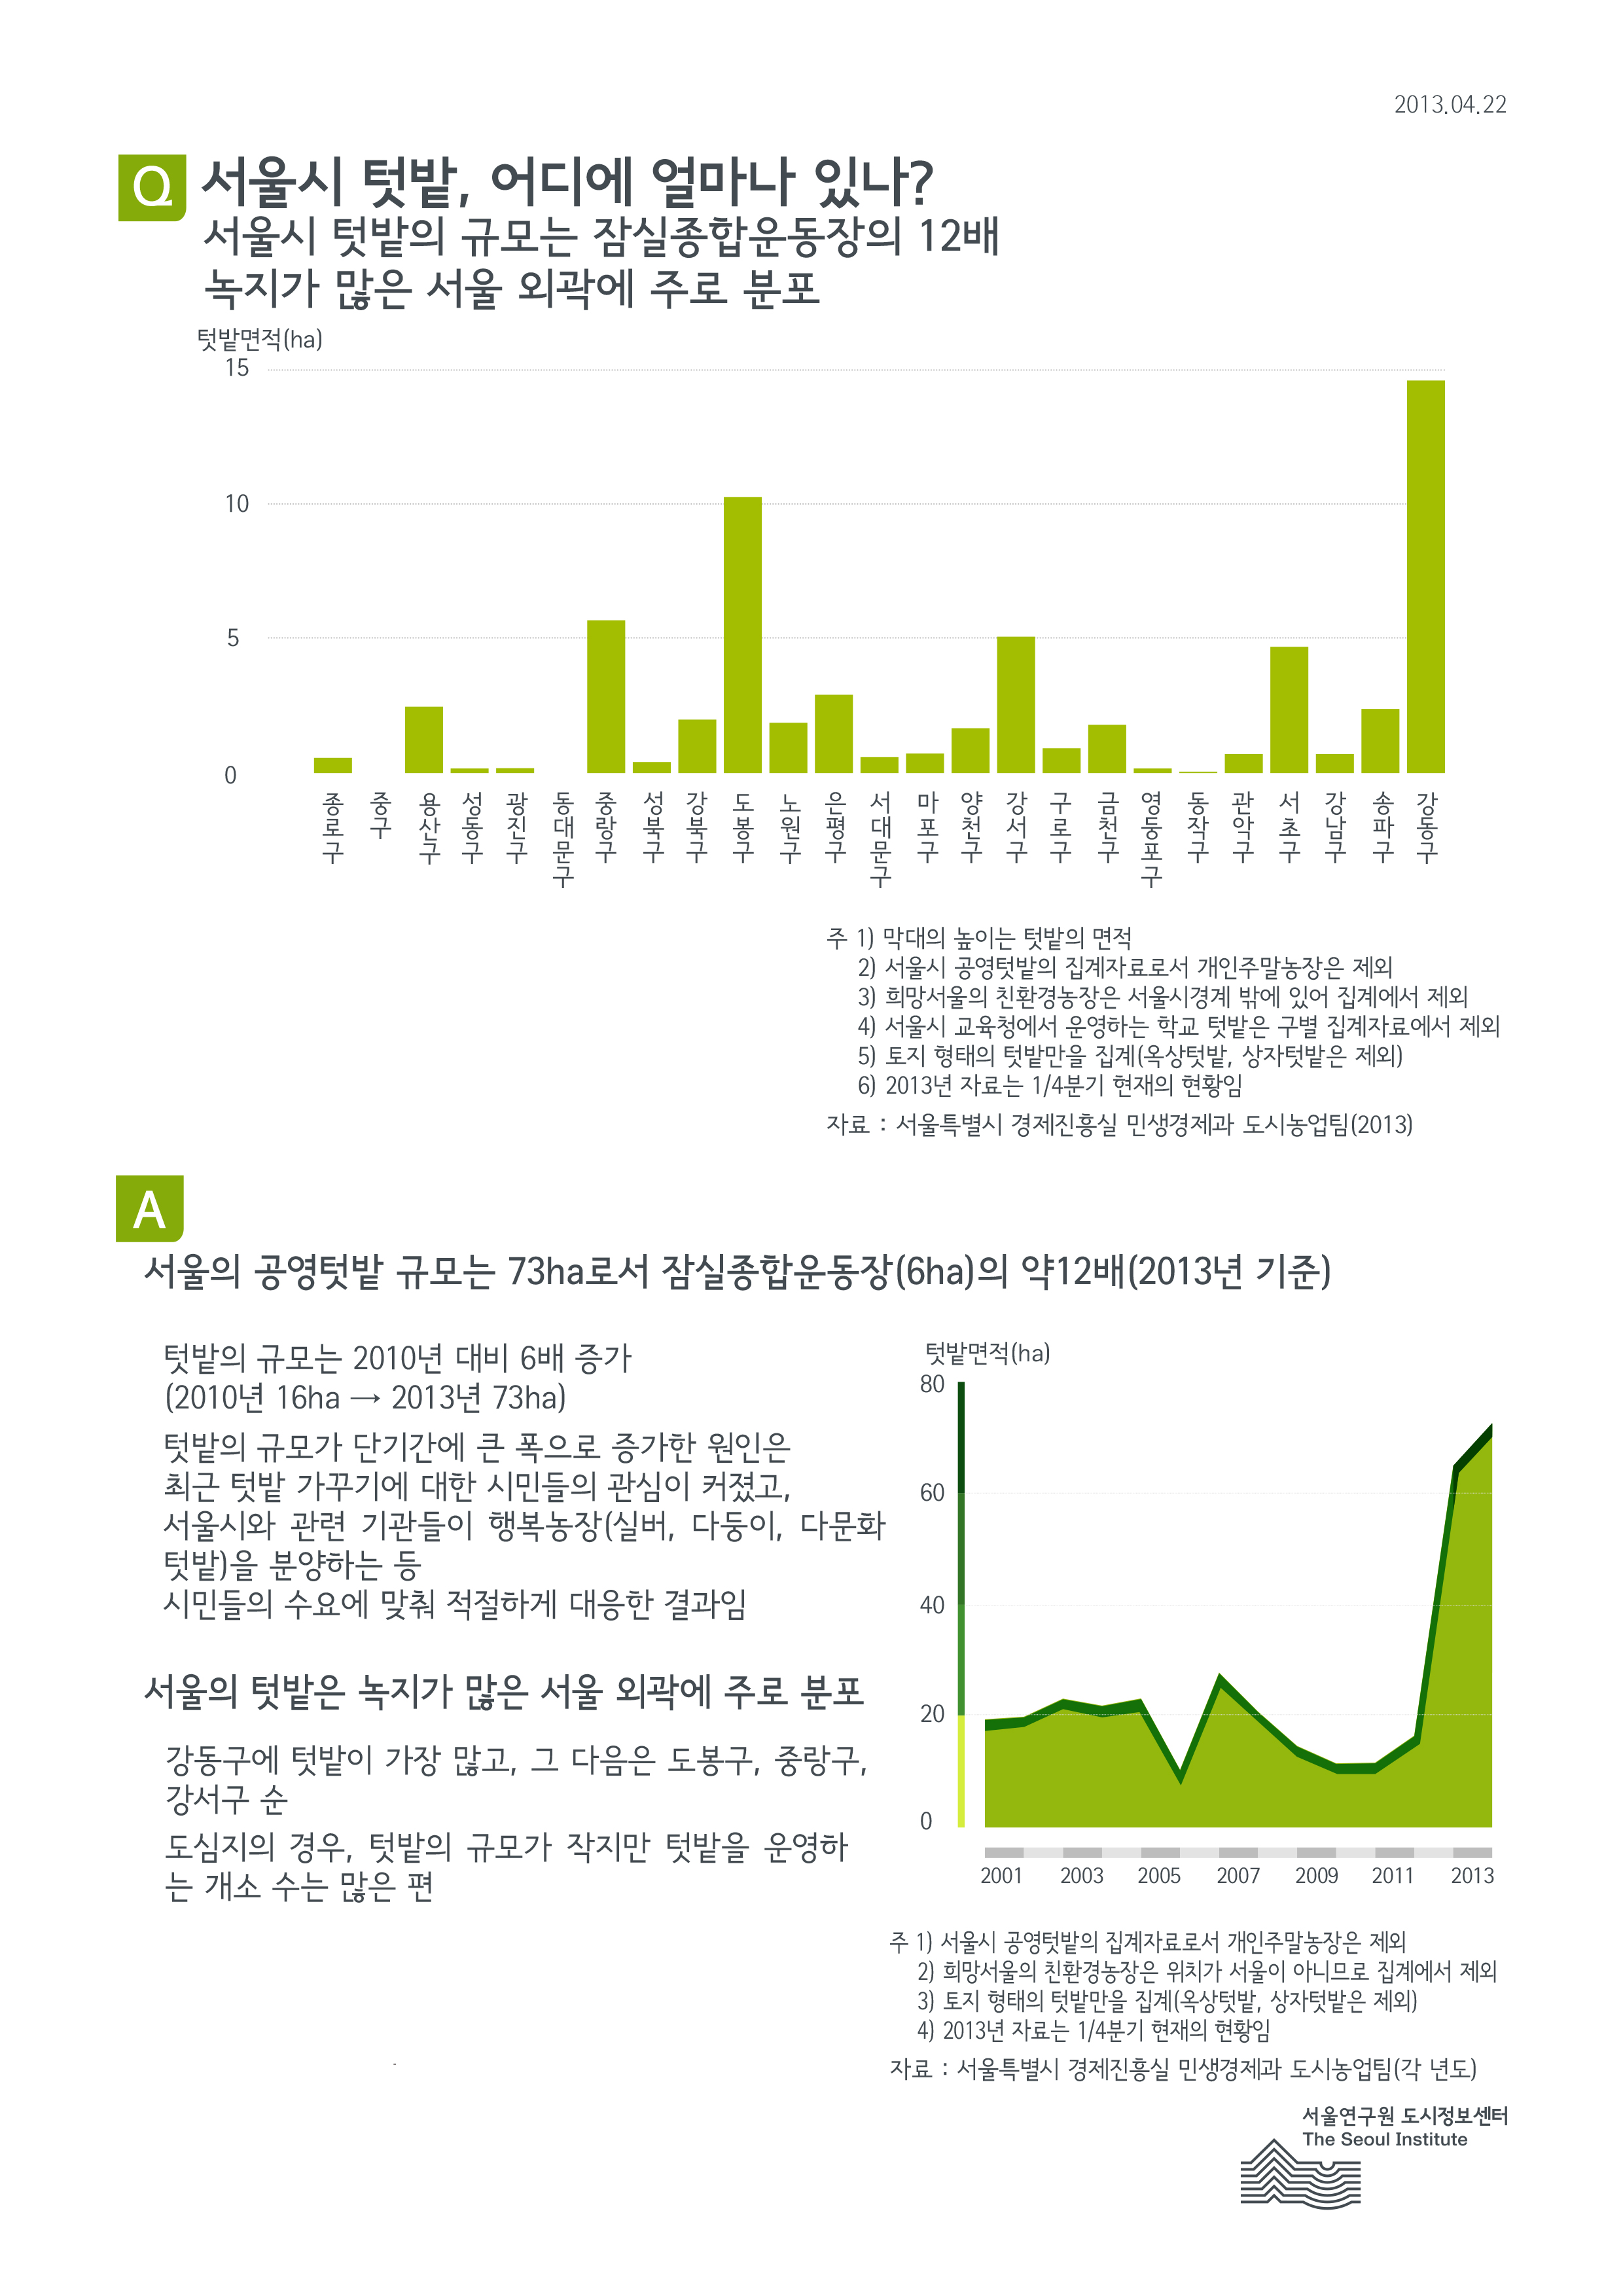 서울시 텃밭, 어디에 얼마나 있나? 서울인포그래픽스 제30호 2013년 4월 22일 서울시 텃밭의 규모는 잠실종합운동장의 12배. 녹지가 많은 서울 외곽에 주로 분포함으로 정리될 수 있습니다. 인포그래픽으로 제공되는 그래픽은 하단에 표로 자세히 제공됩니다.